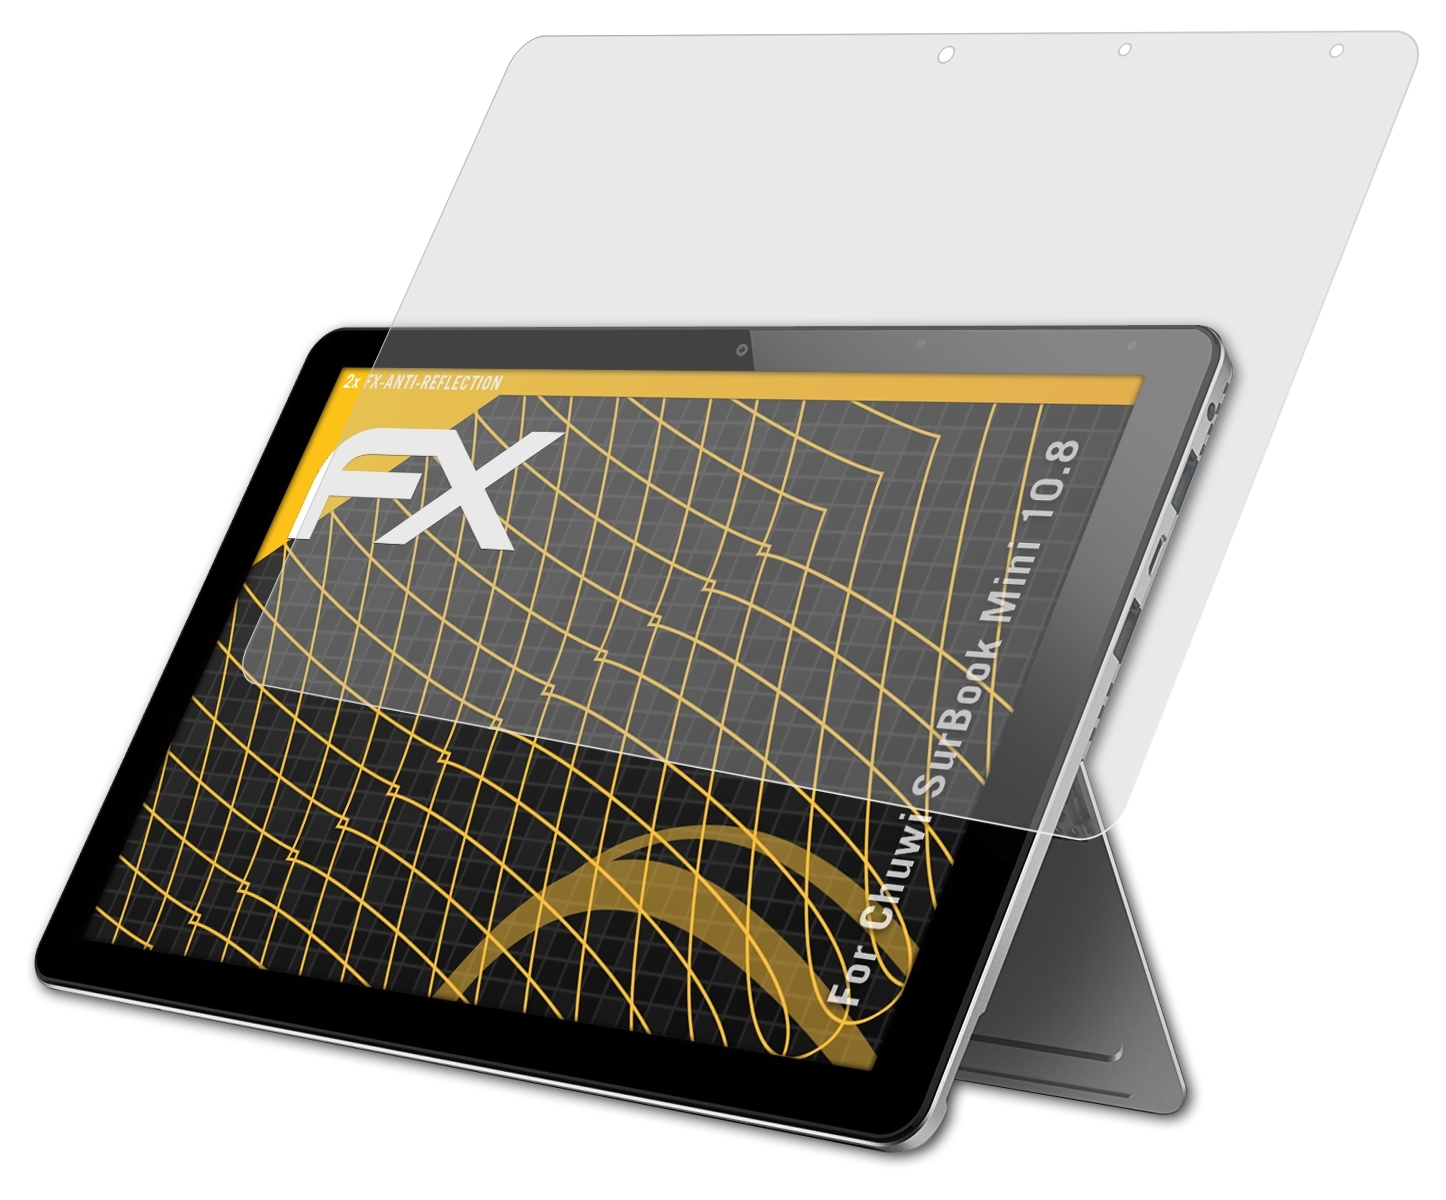 FX-Antireflex 10.8) Mini ATFOLIX 2x Chuwi Displayschutz(für SurBook